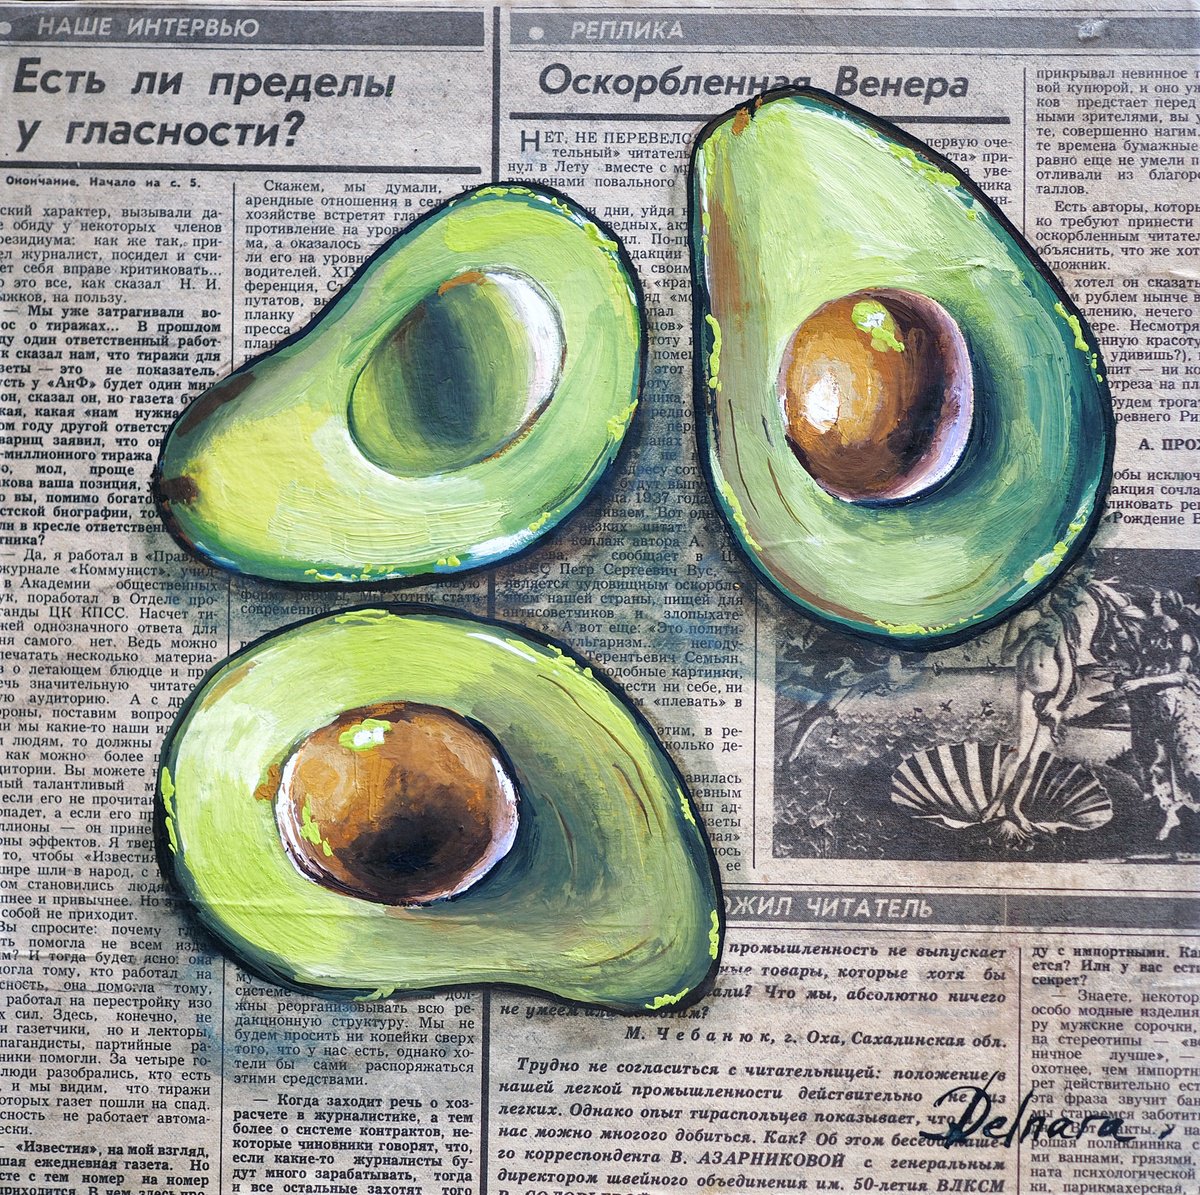 Avocado on vintage (1989) newspaper by Delnara El